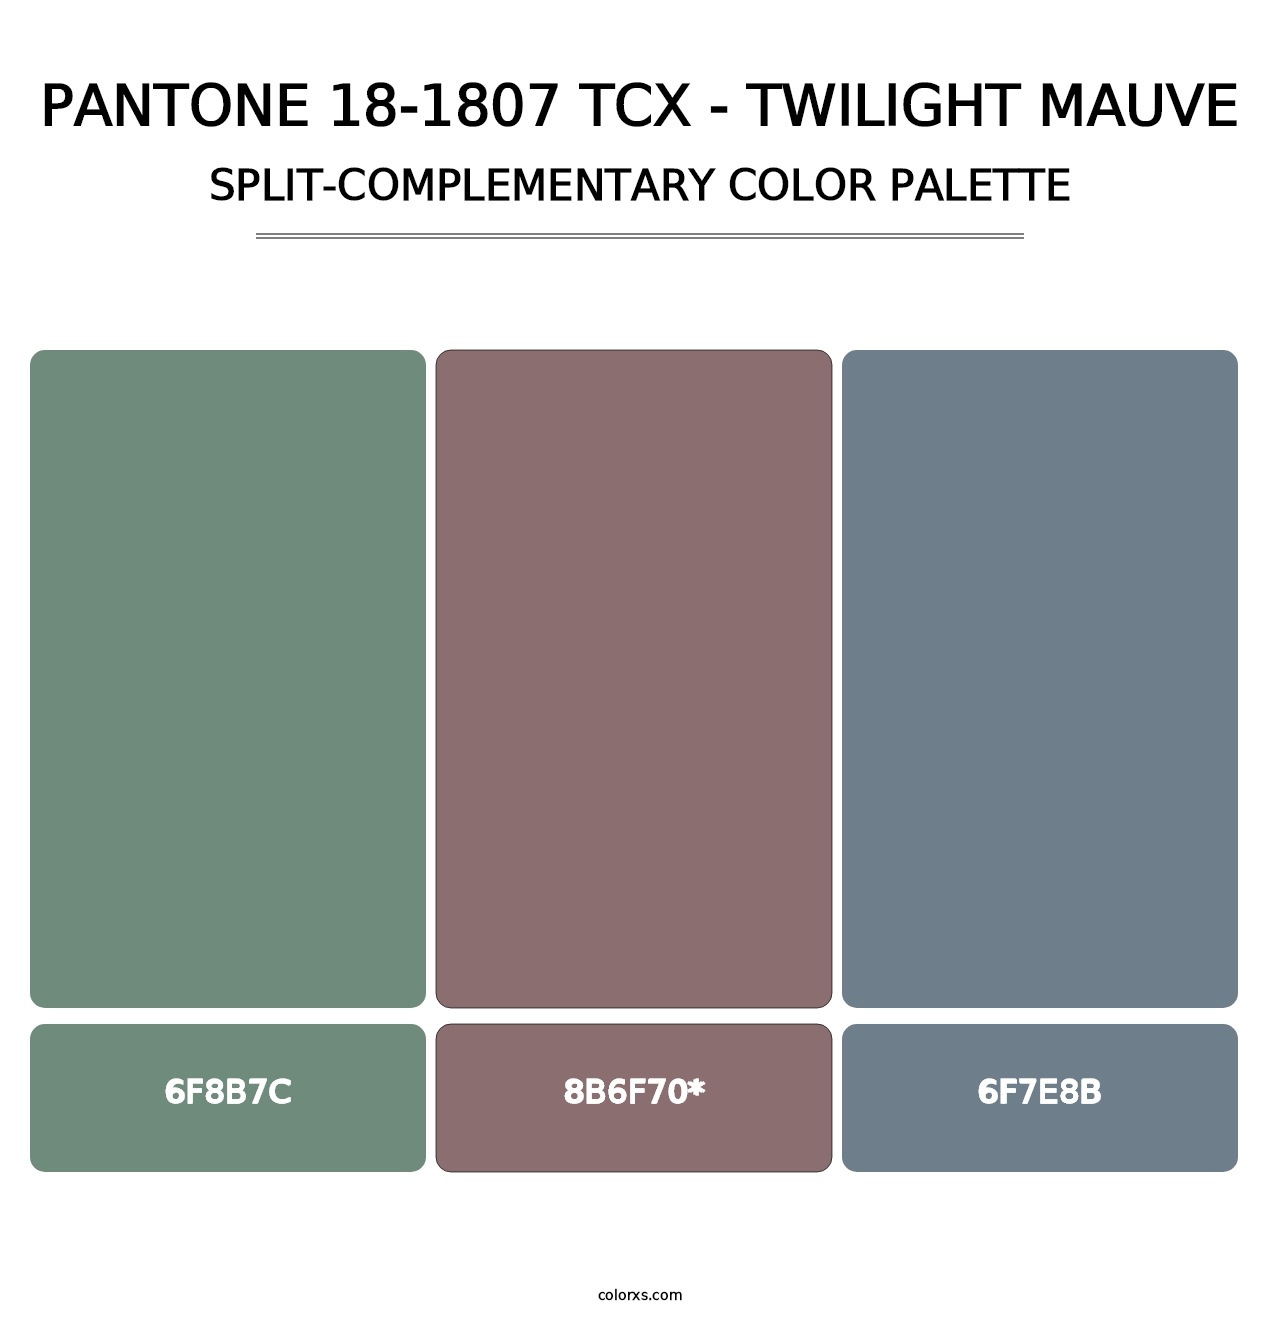 PANTONE 18-1807 TCX - Twilight Mauve - Split-Complementary Color Palette